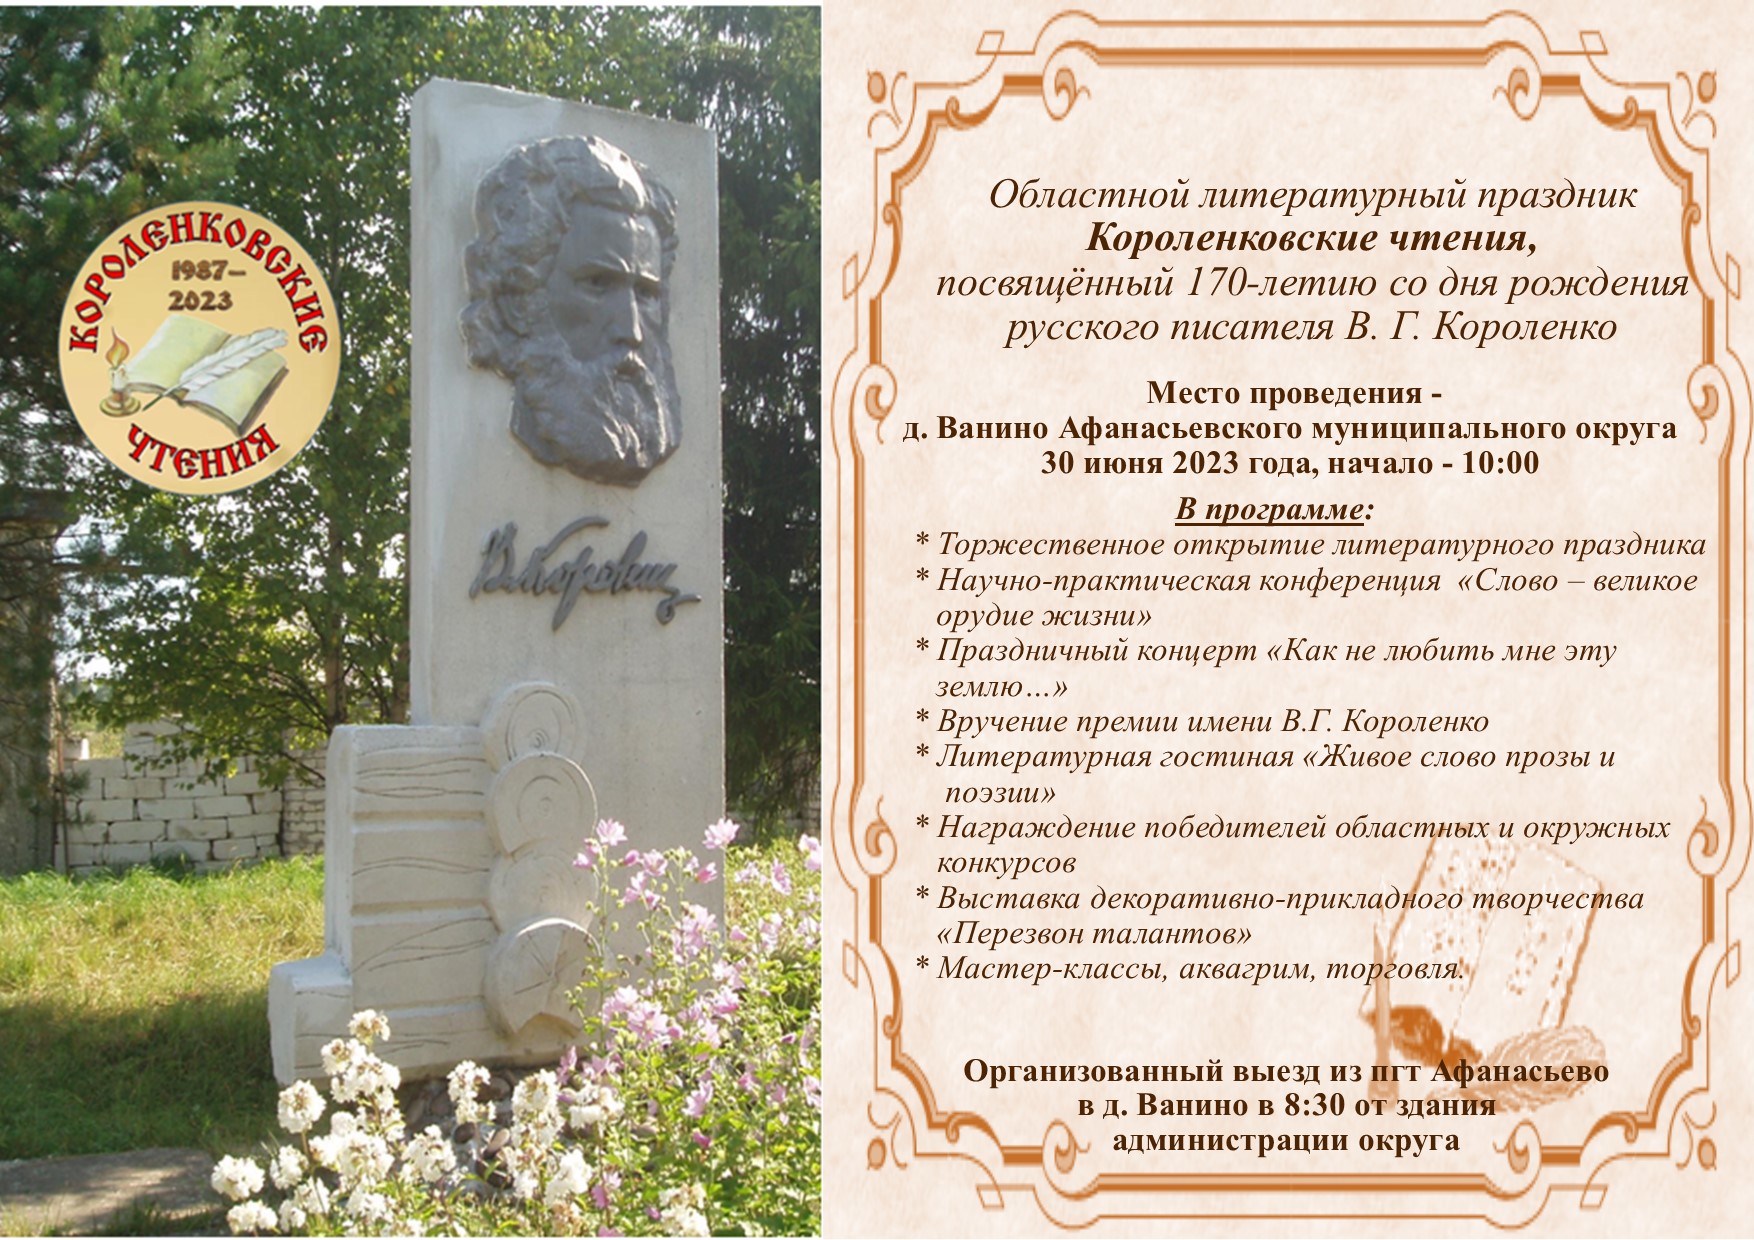 Областной литературный праздник Короленковские чтения состоится 30 июня в д. Ванино.